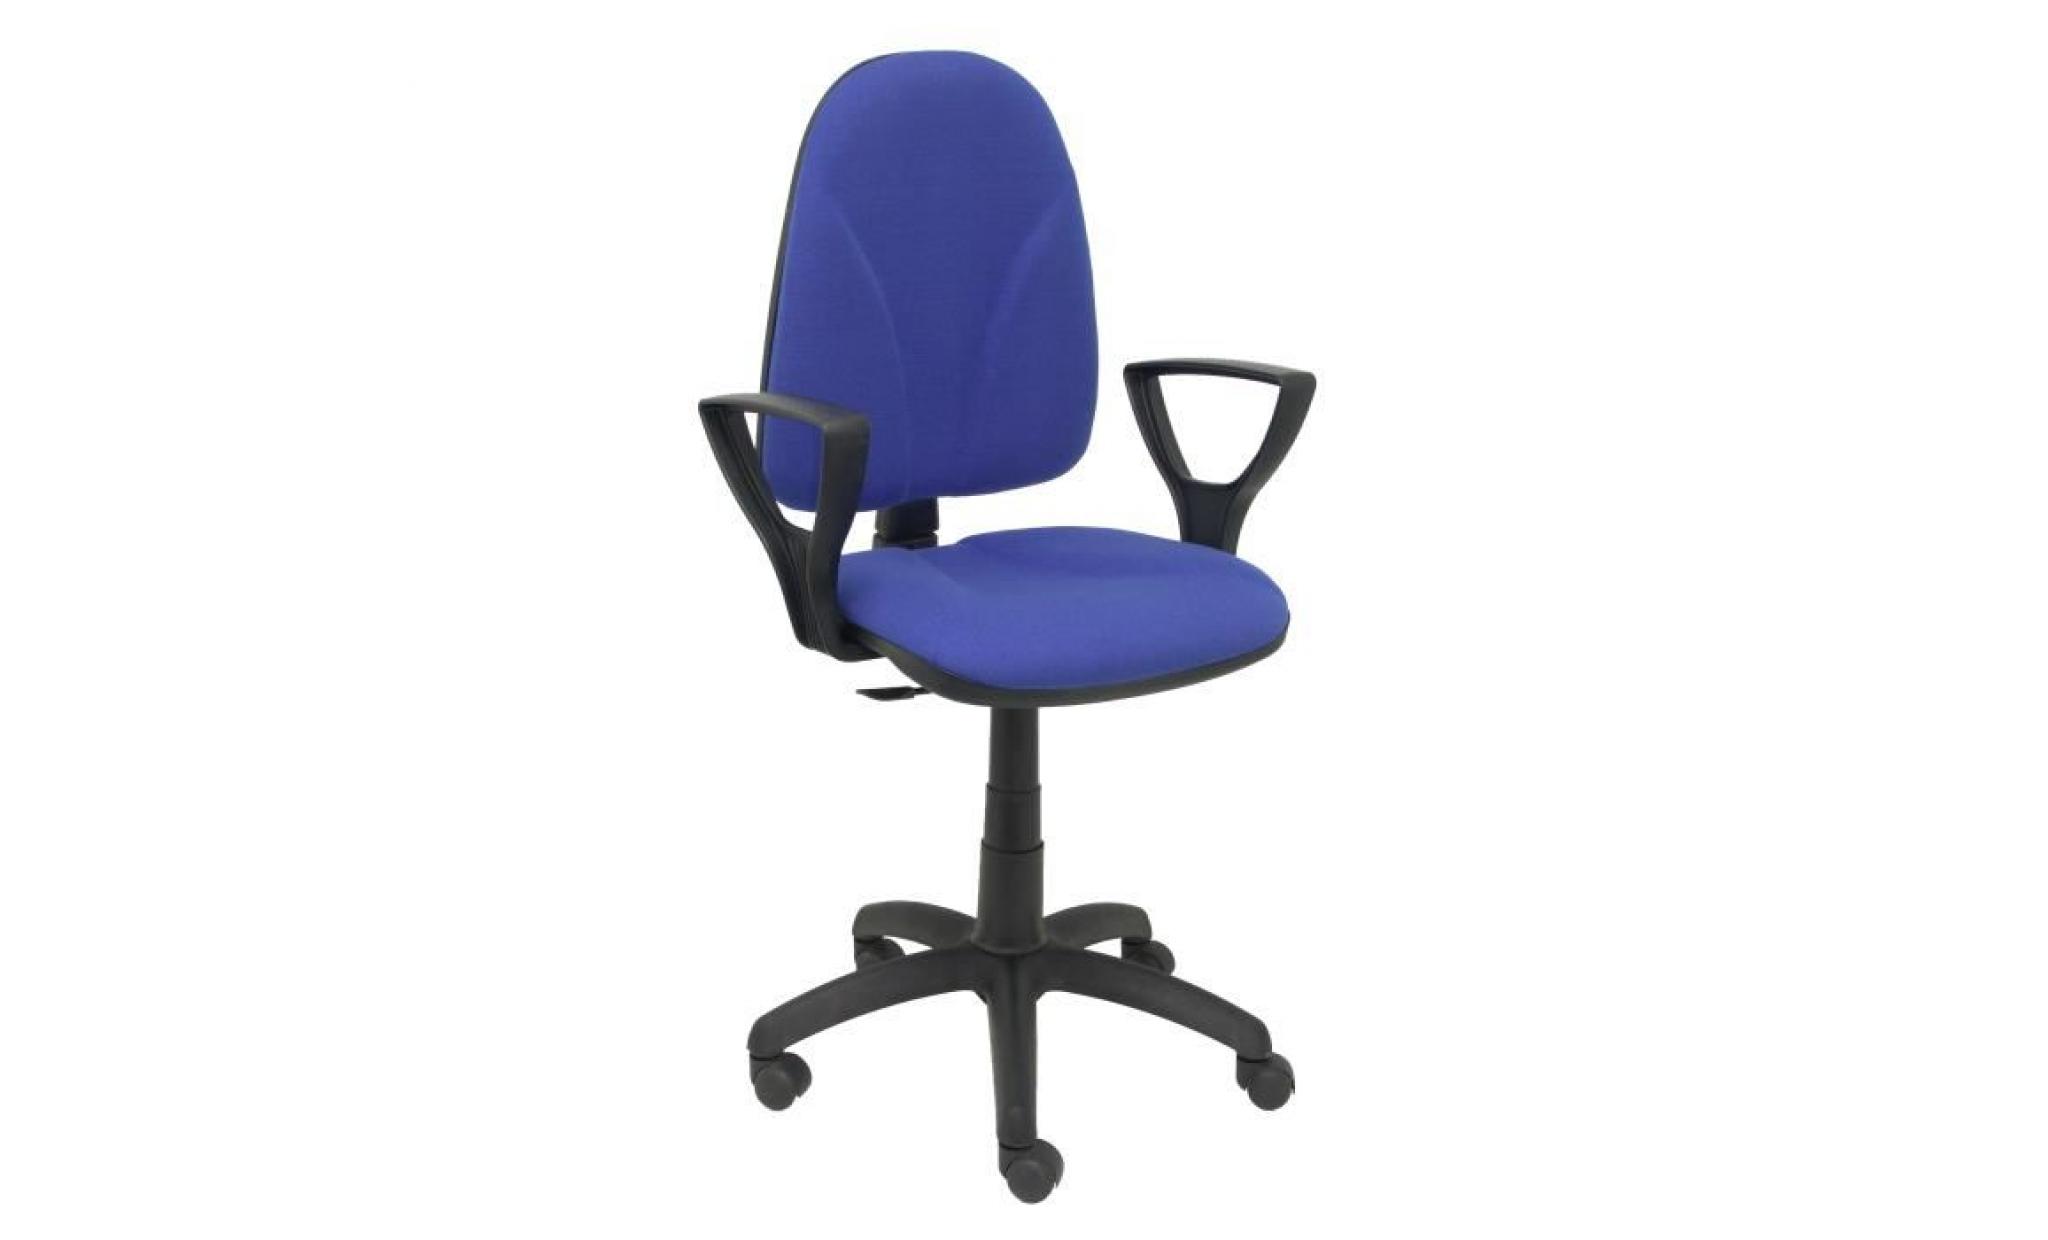 modello 1006az algarra   sedia da ufficio ergonomica con meccanismo di contatto permanente e regolabile in altezza   sedile e pas cher